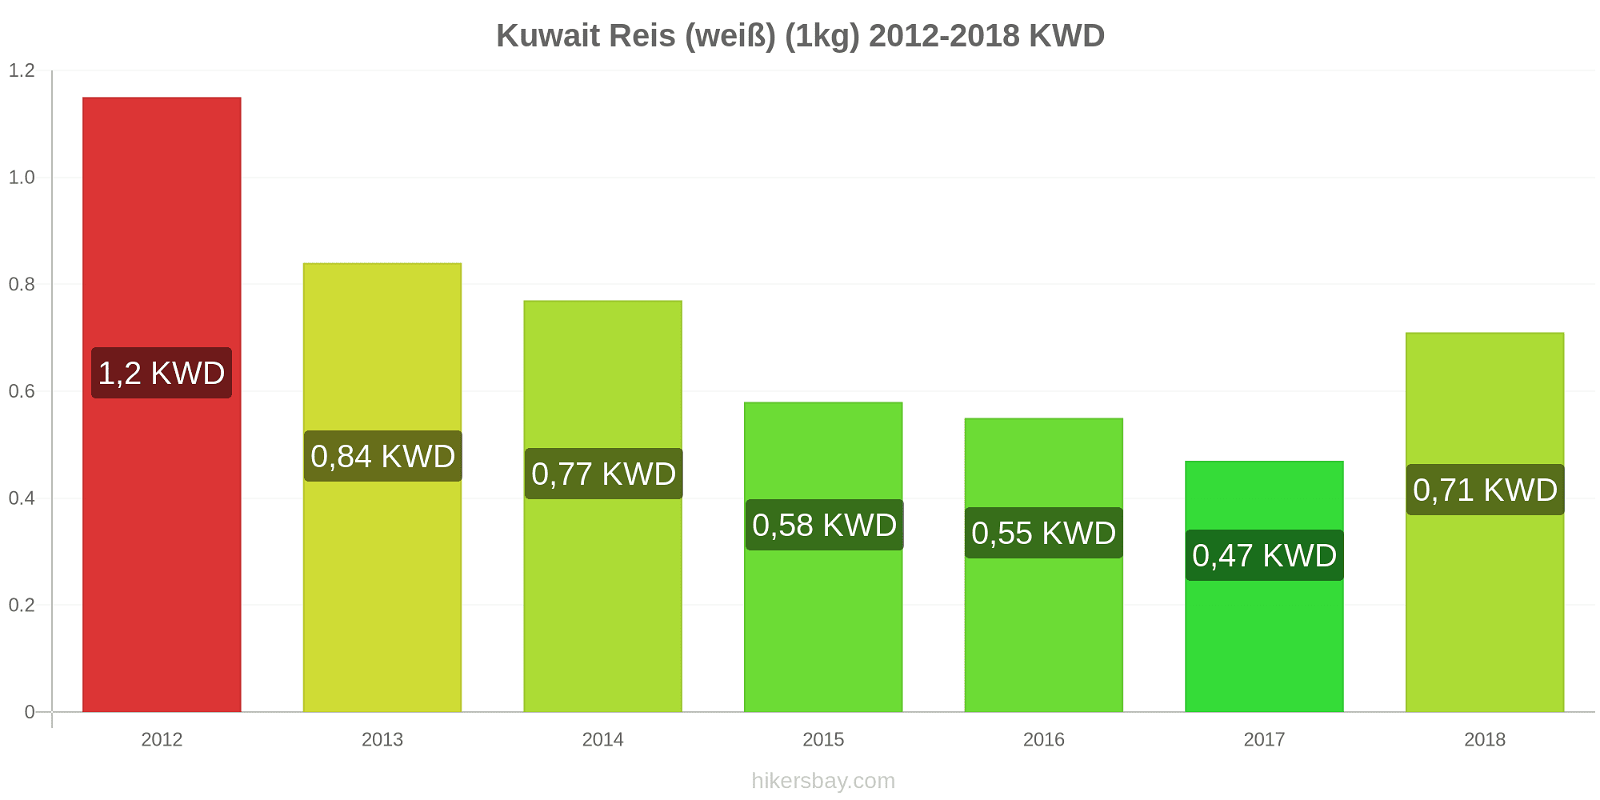 Kuwait Preisänderungen Kilo weißen Reis hikersbay.com